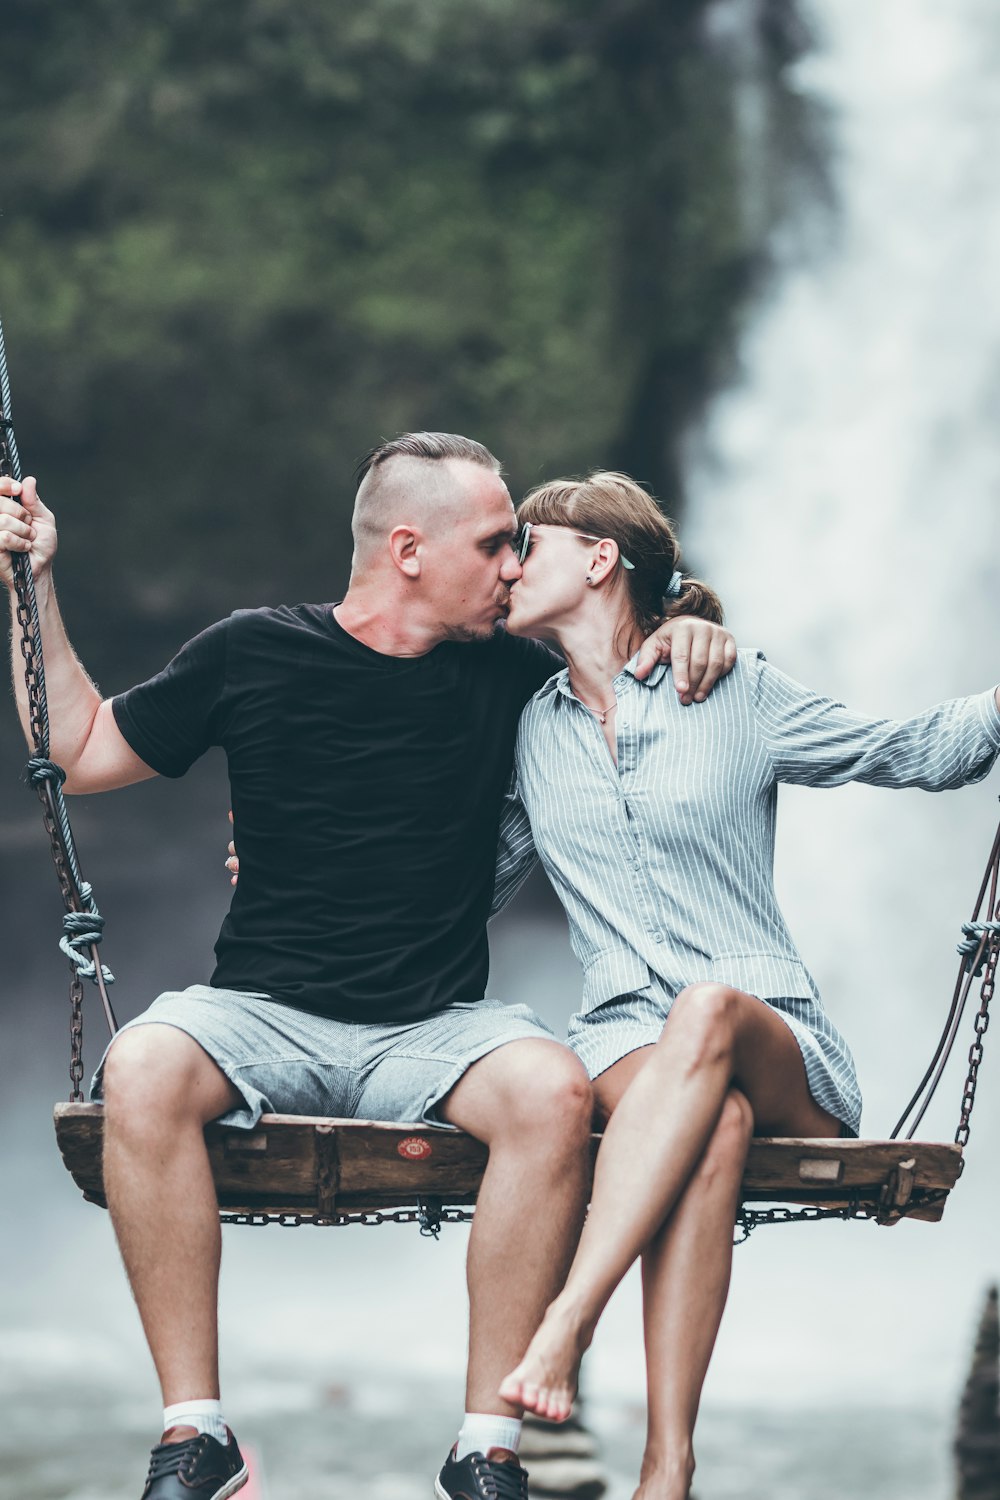 Mann und Frau küssen sich beim Reiten auf der Schaukelbank